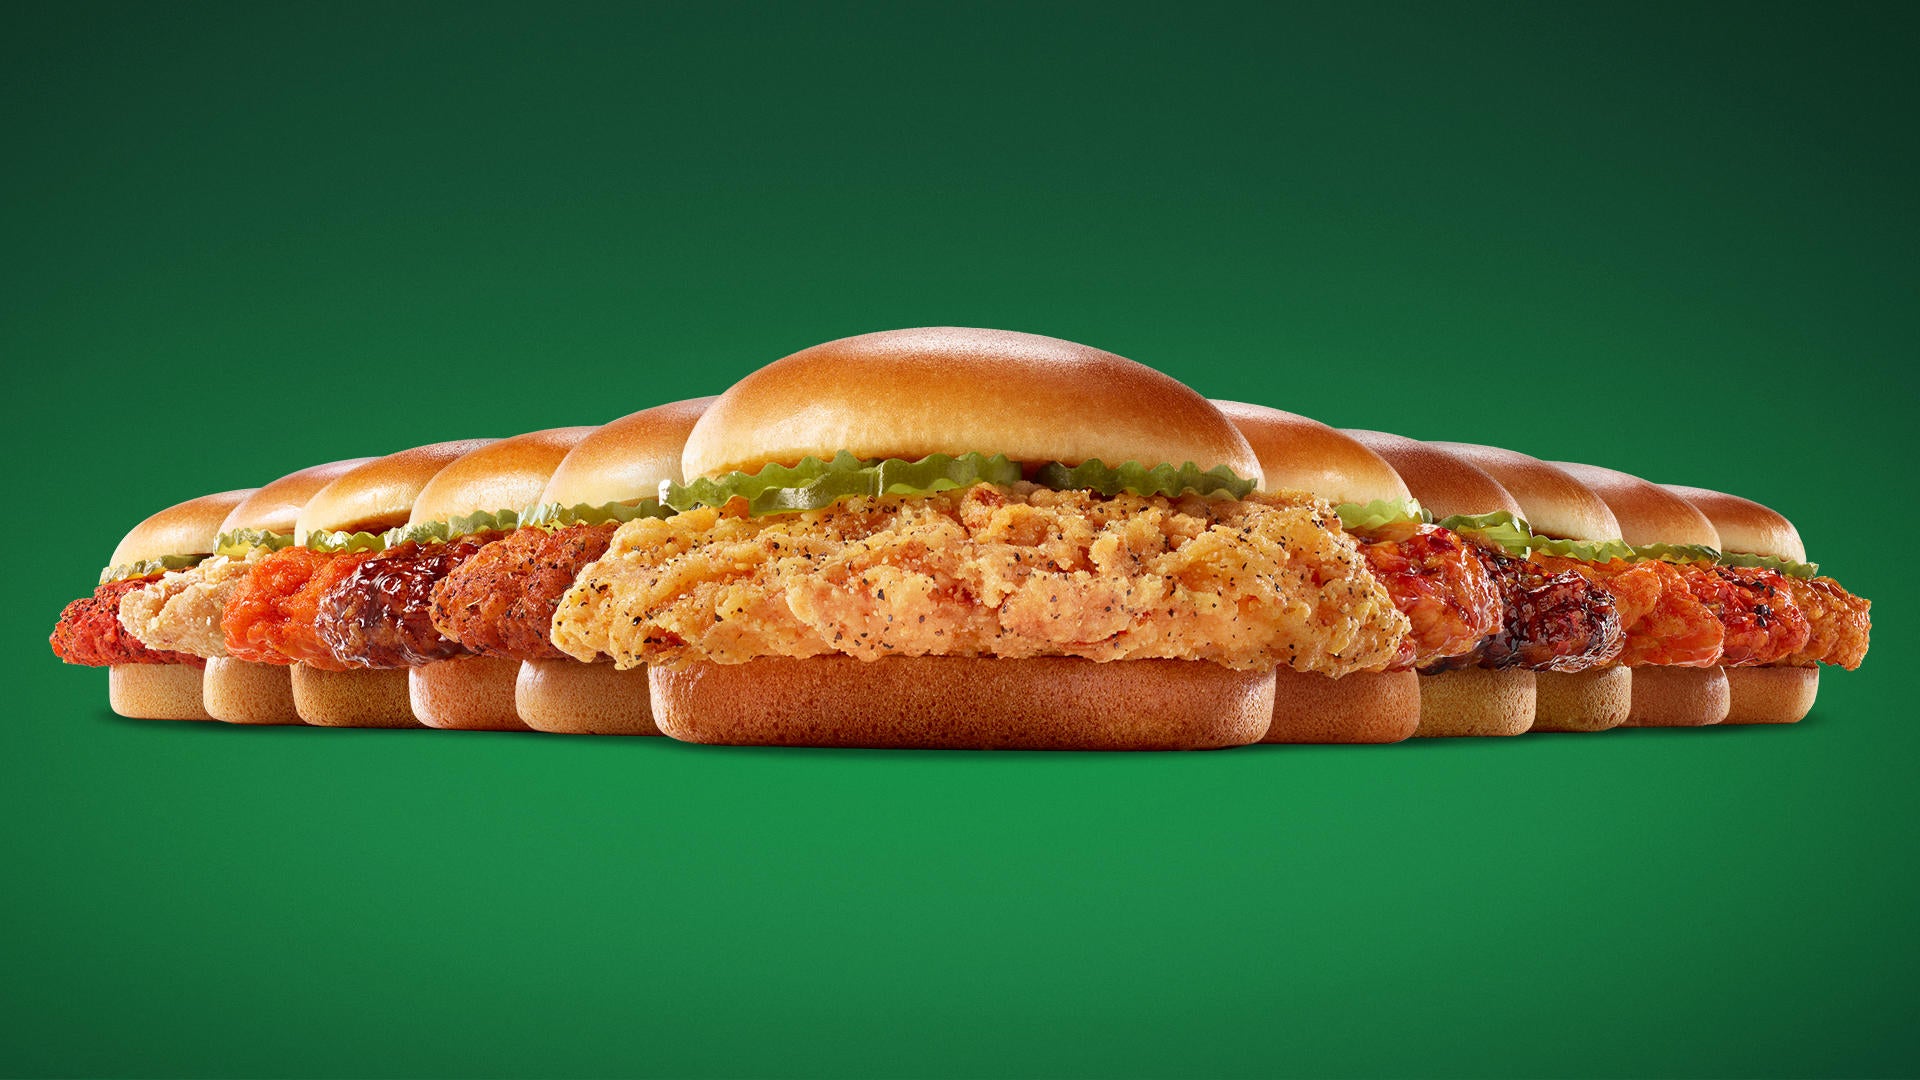 wingstop-chicken-sandwich.jpg